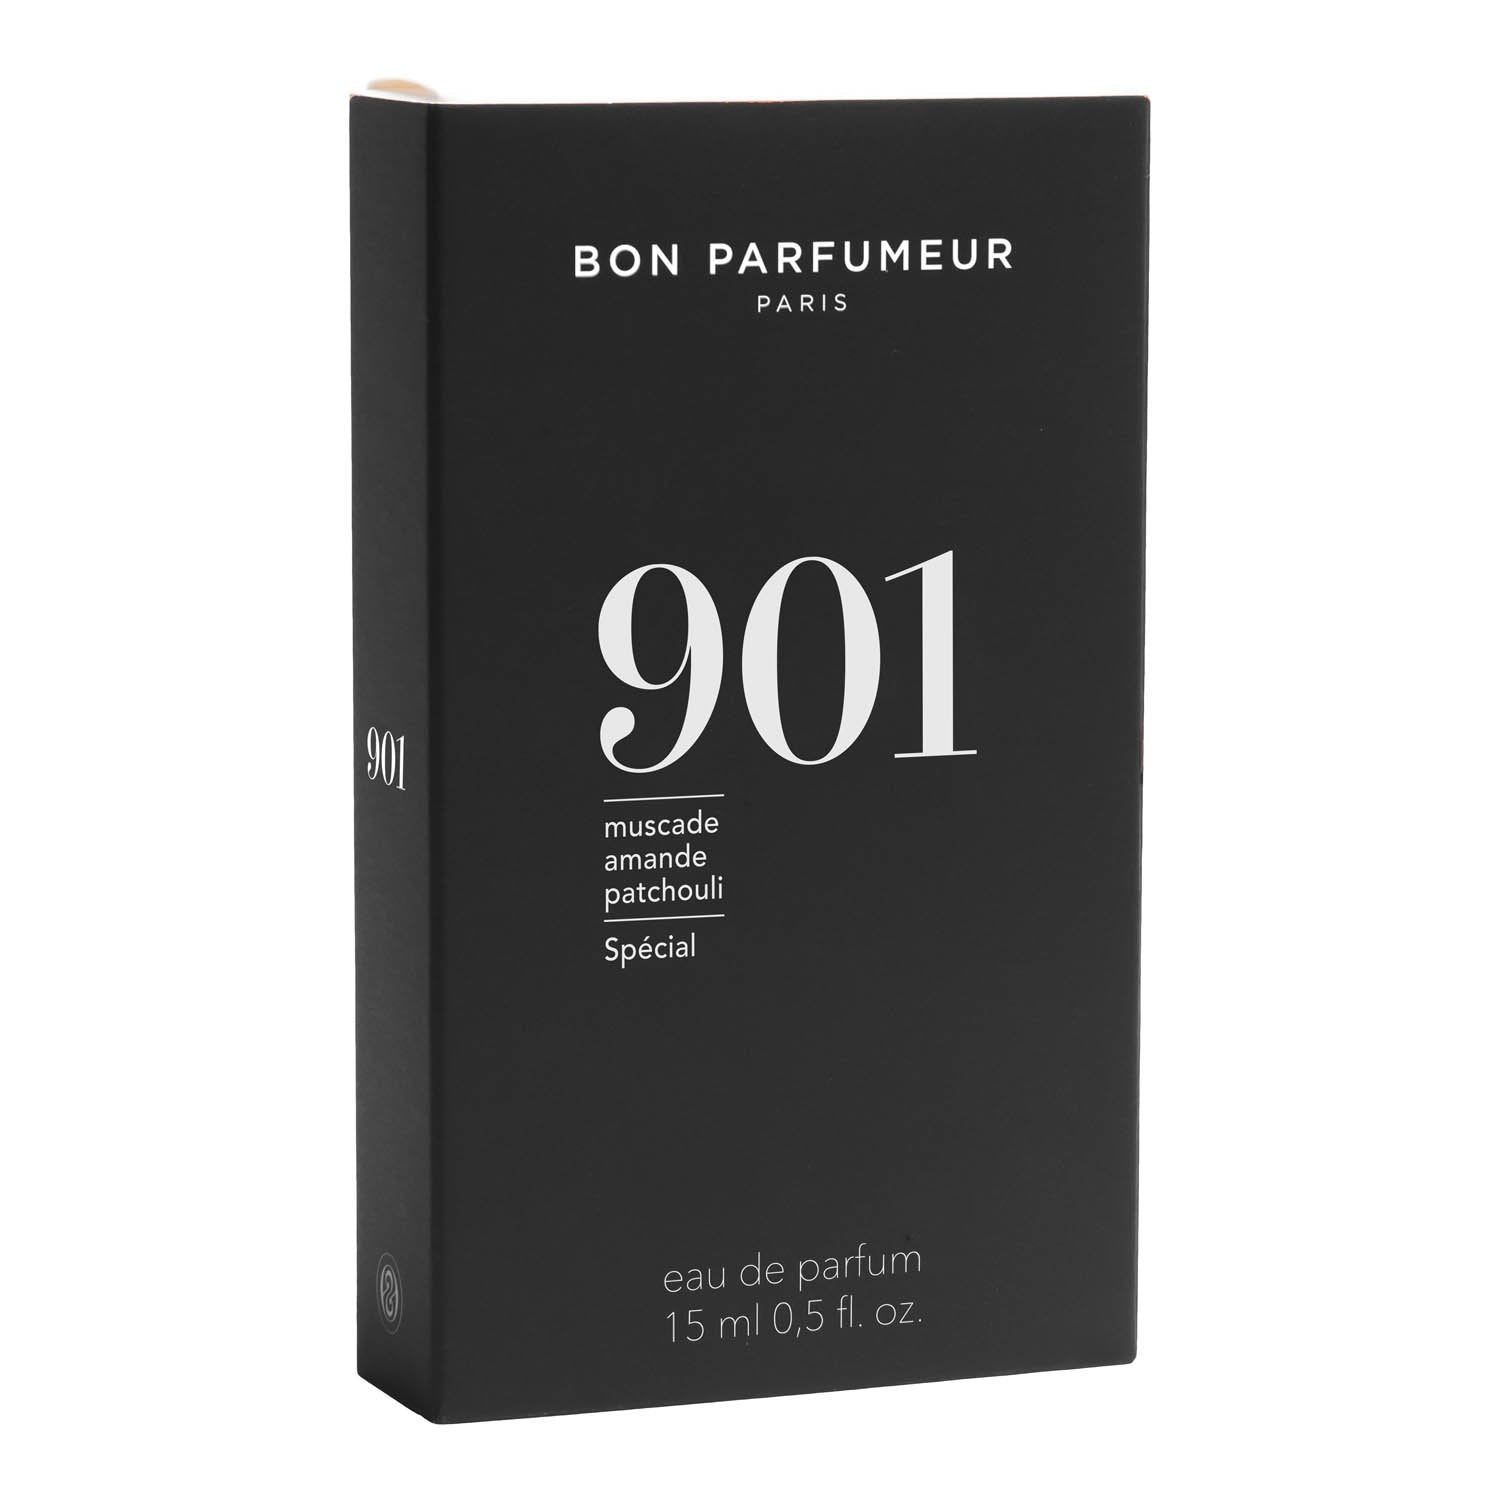 Bon Parfumeur Eau de Parfum 901 15 ml